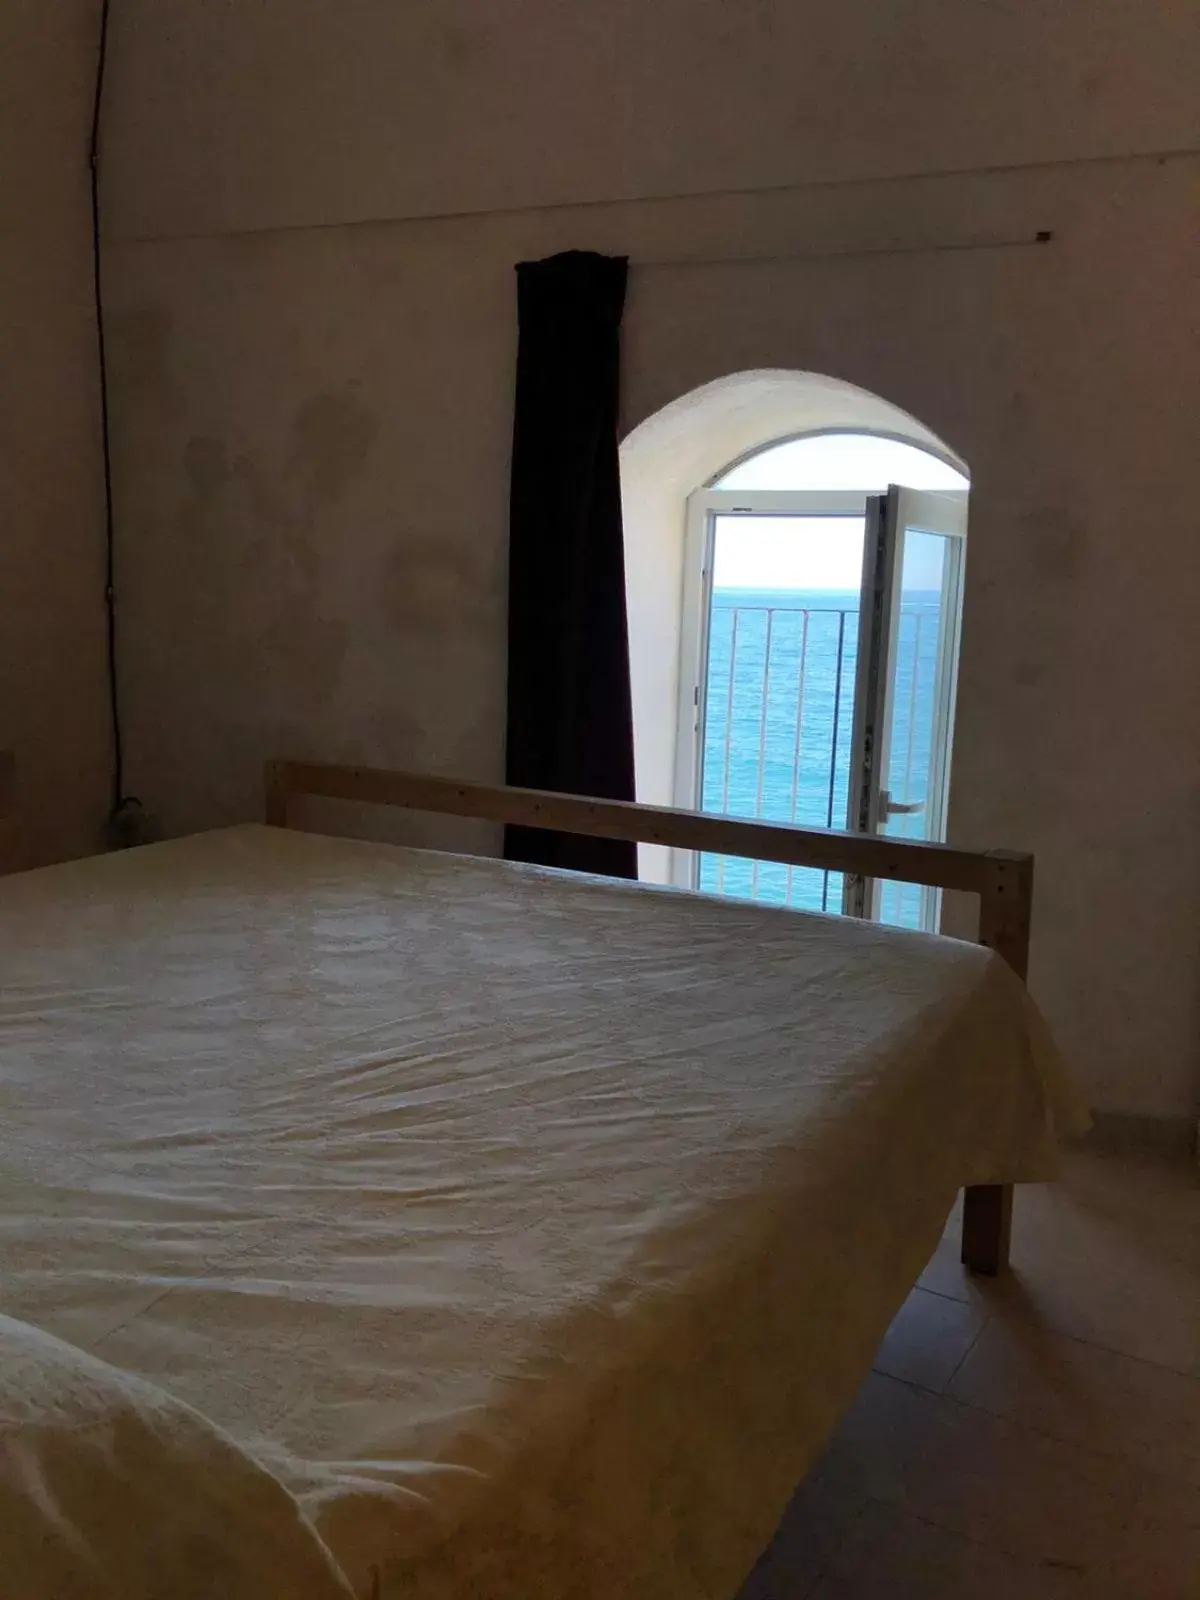 Bed in Rocca Sul Mare Hotel